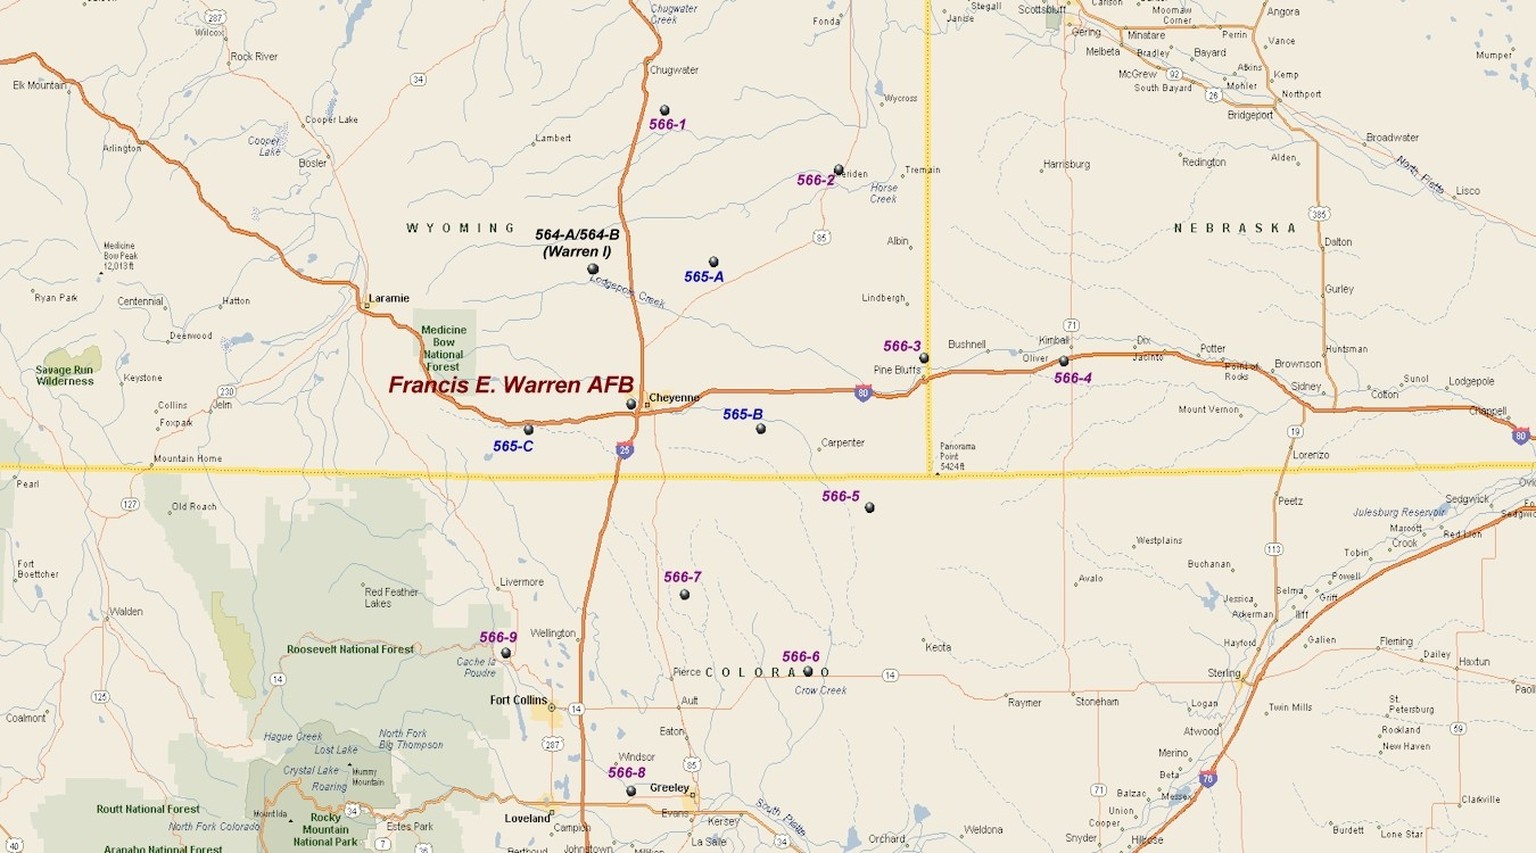 Atomraketensilos (schwarz, blau, violett) in der Nähe der F. E. Warren Air Force Base in Wyoming.